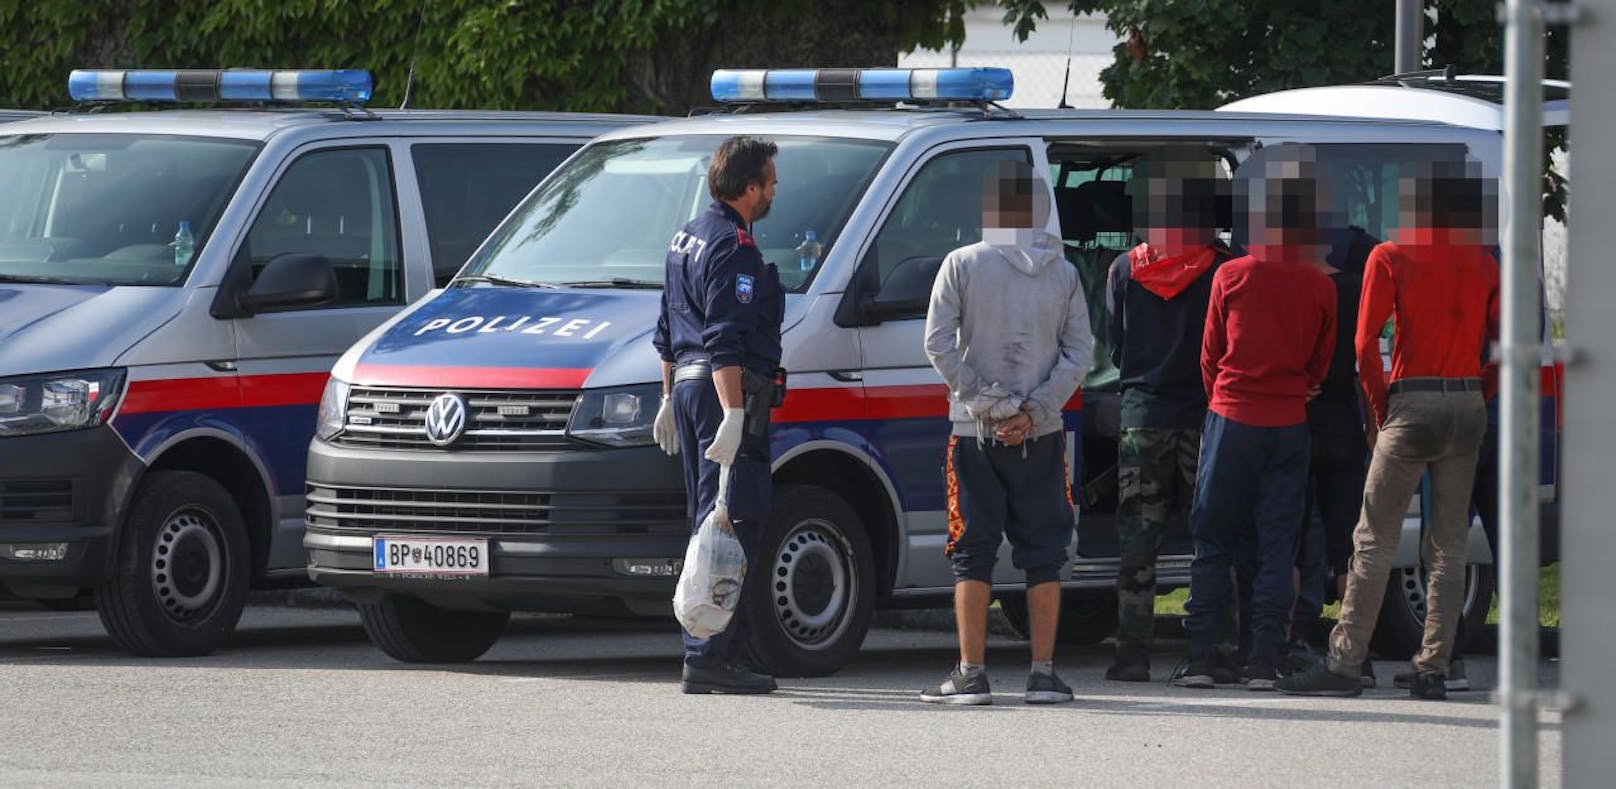 41 Flüchtlinge von Polizei bei Lambach aufgegriffen